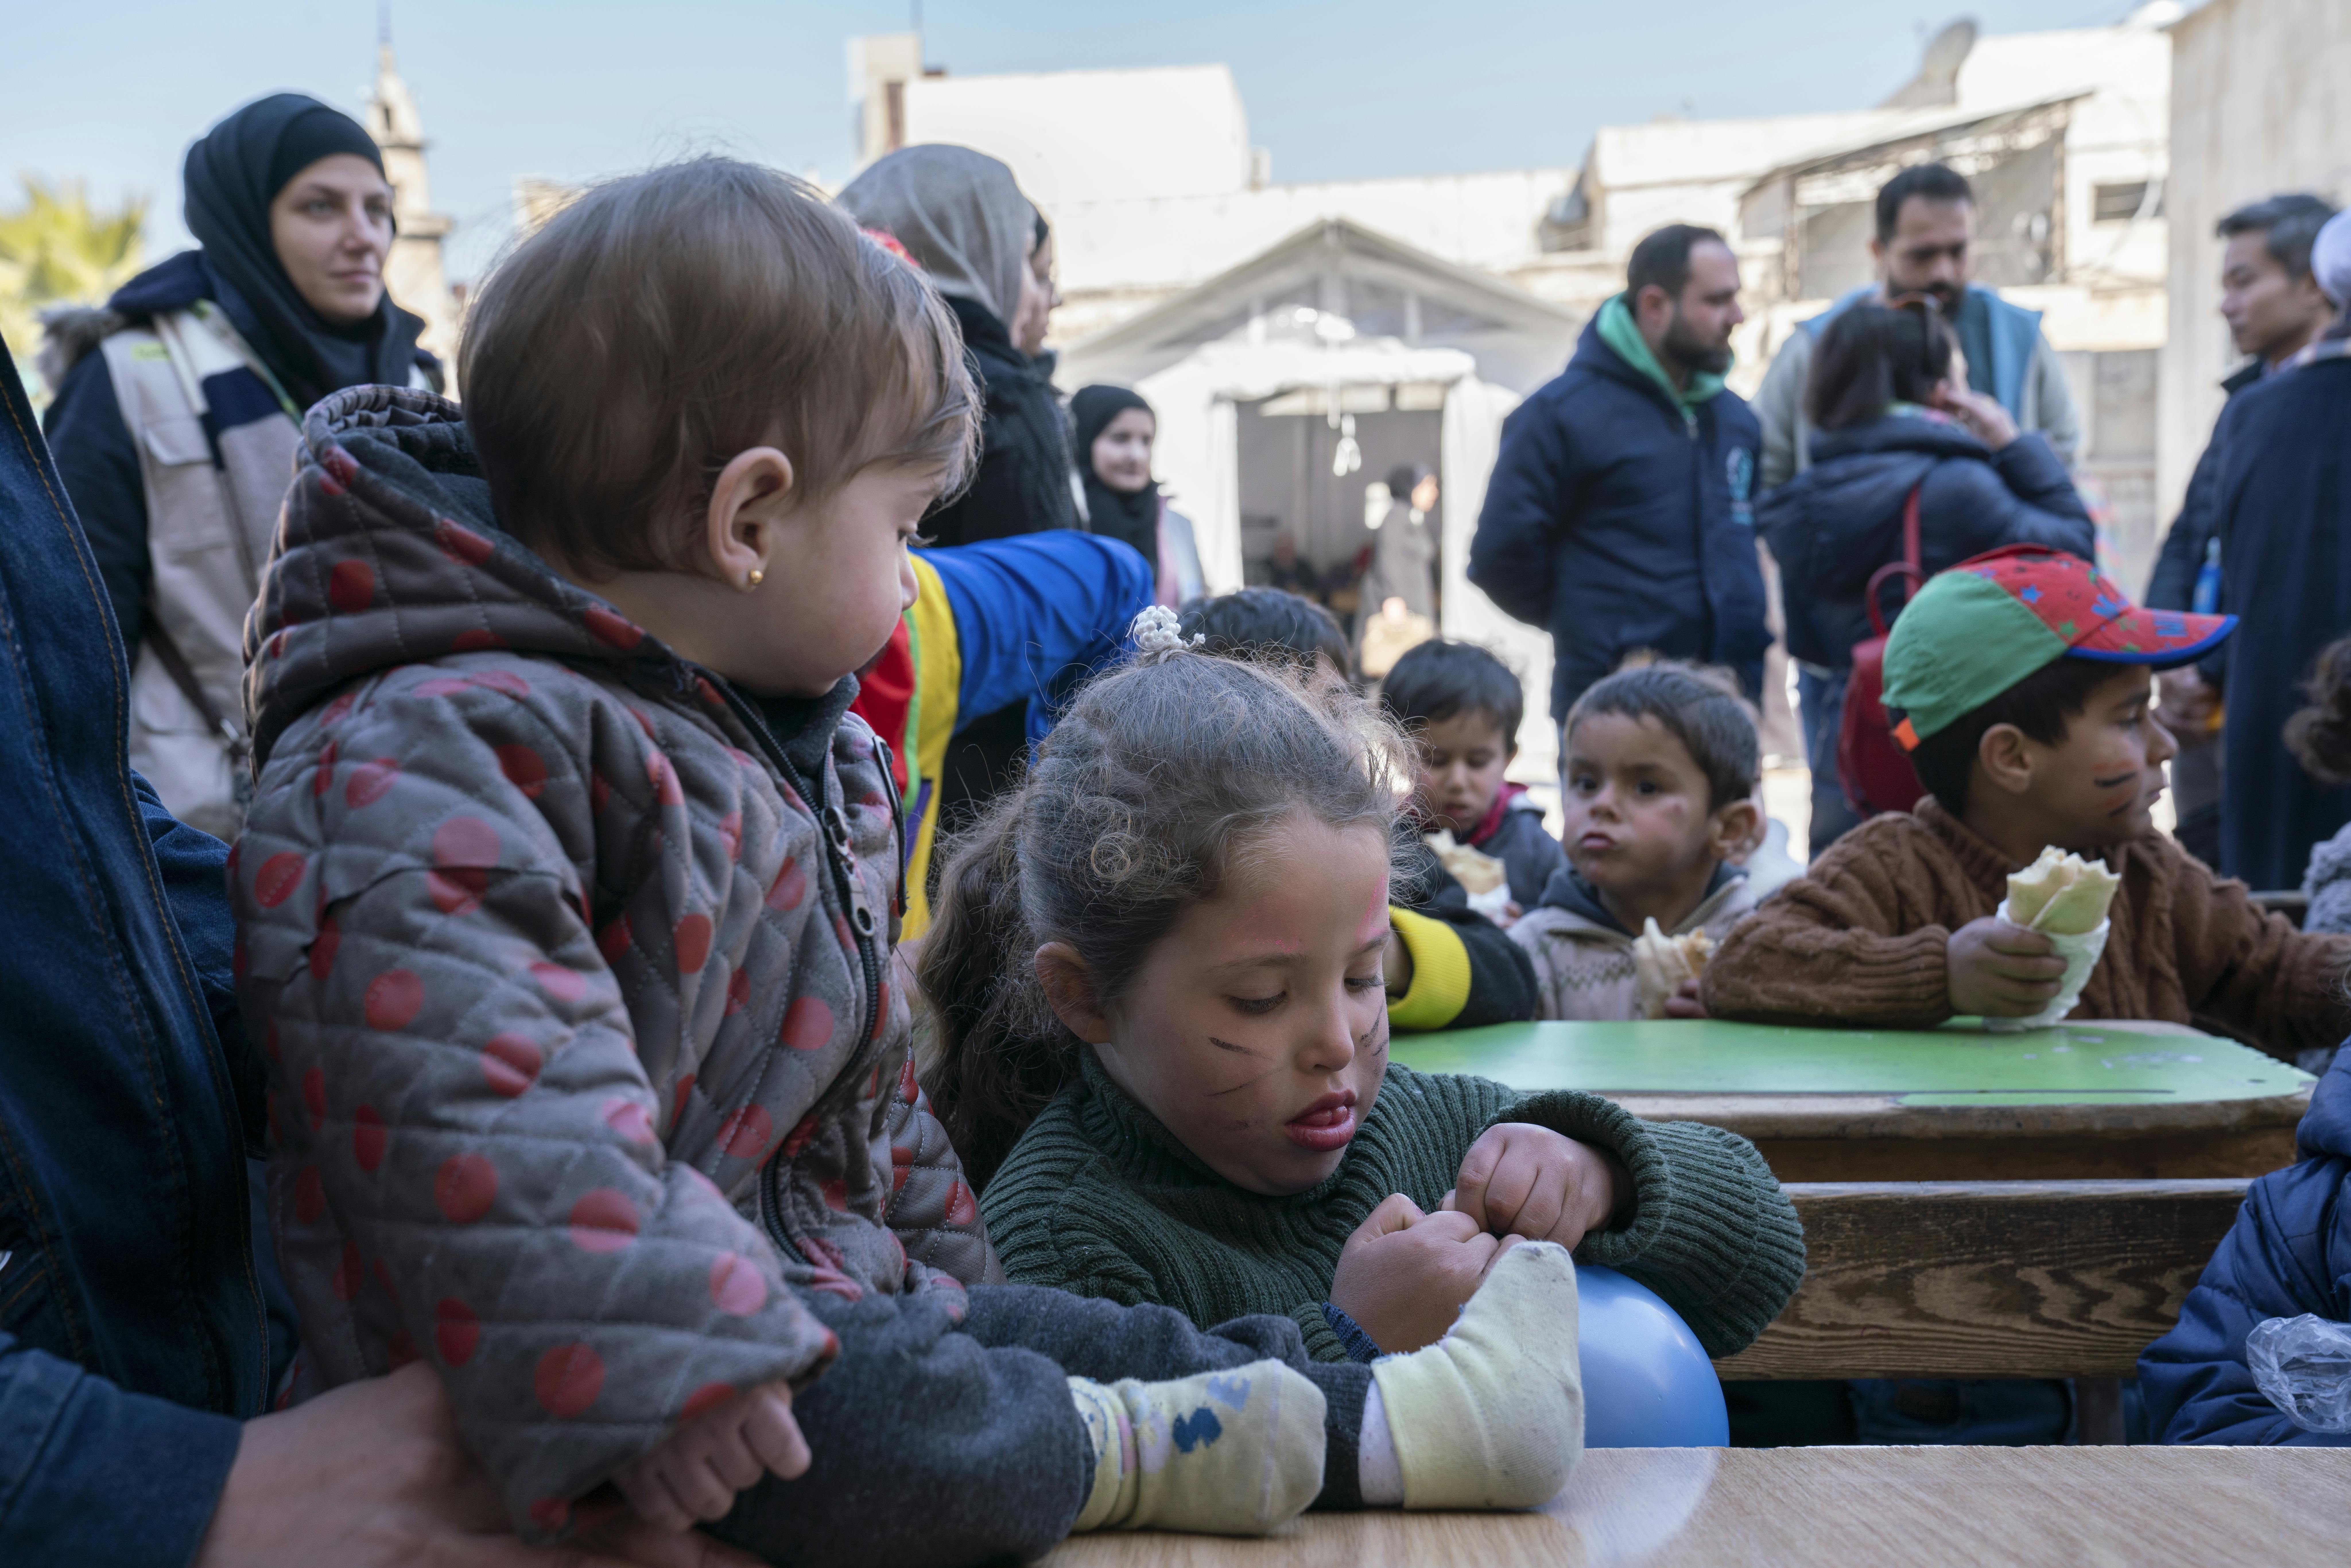 Alcuni bambini sfollati dal recente terremoto, nei pressi di Aleppo, seguono alcune attività organizzate per intrattenerli nel rifugio temporaneo in cui si trovano insieme alle loro famiglie